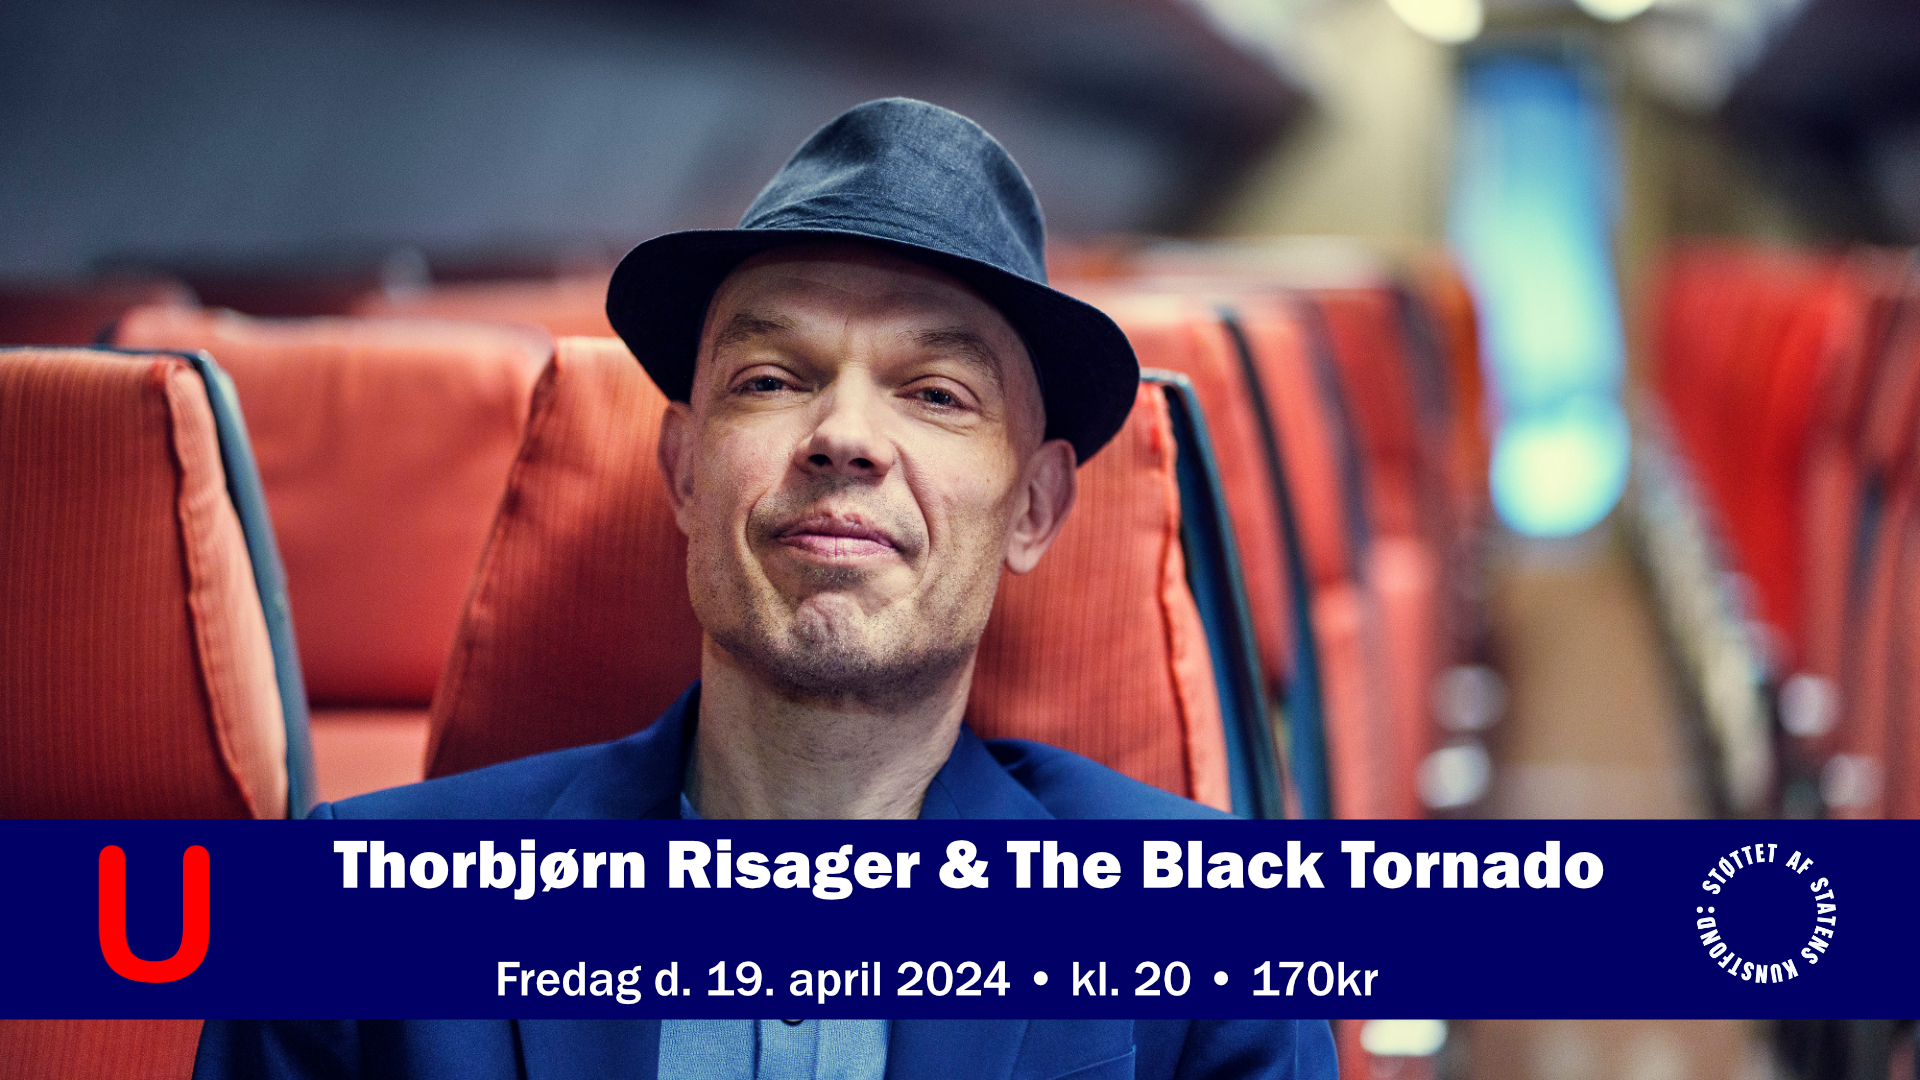 Thorbjørn Risager & The Black Tornado - 19-04-2024 20:00